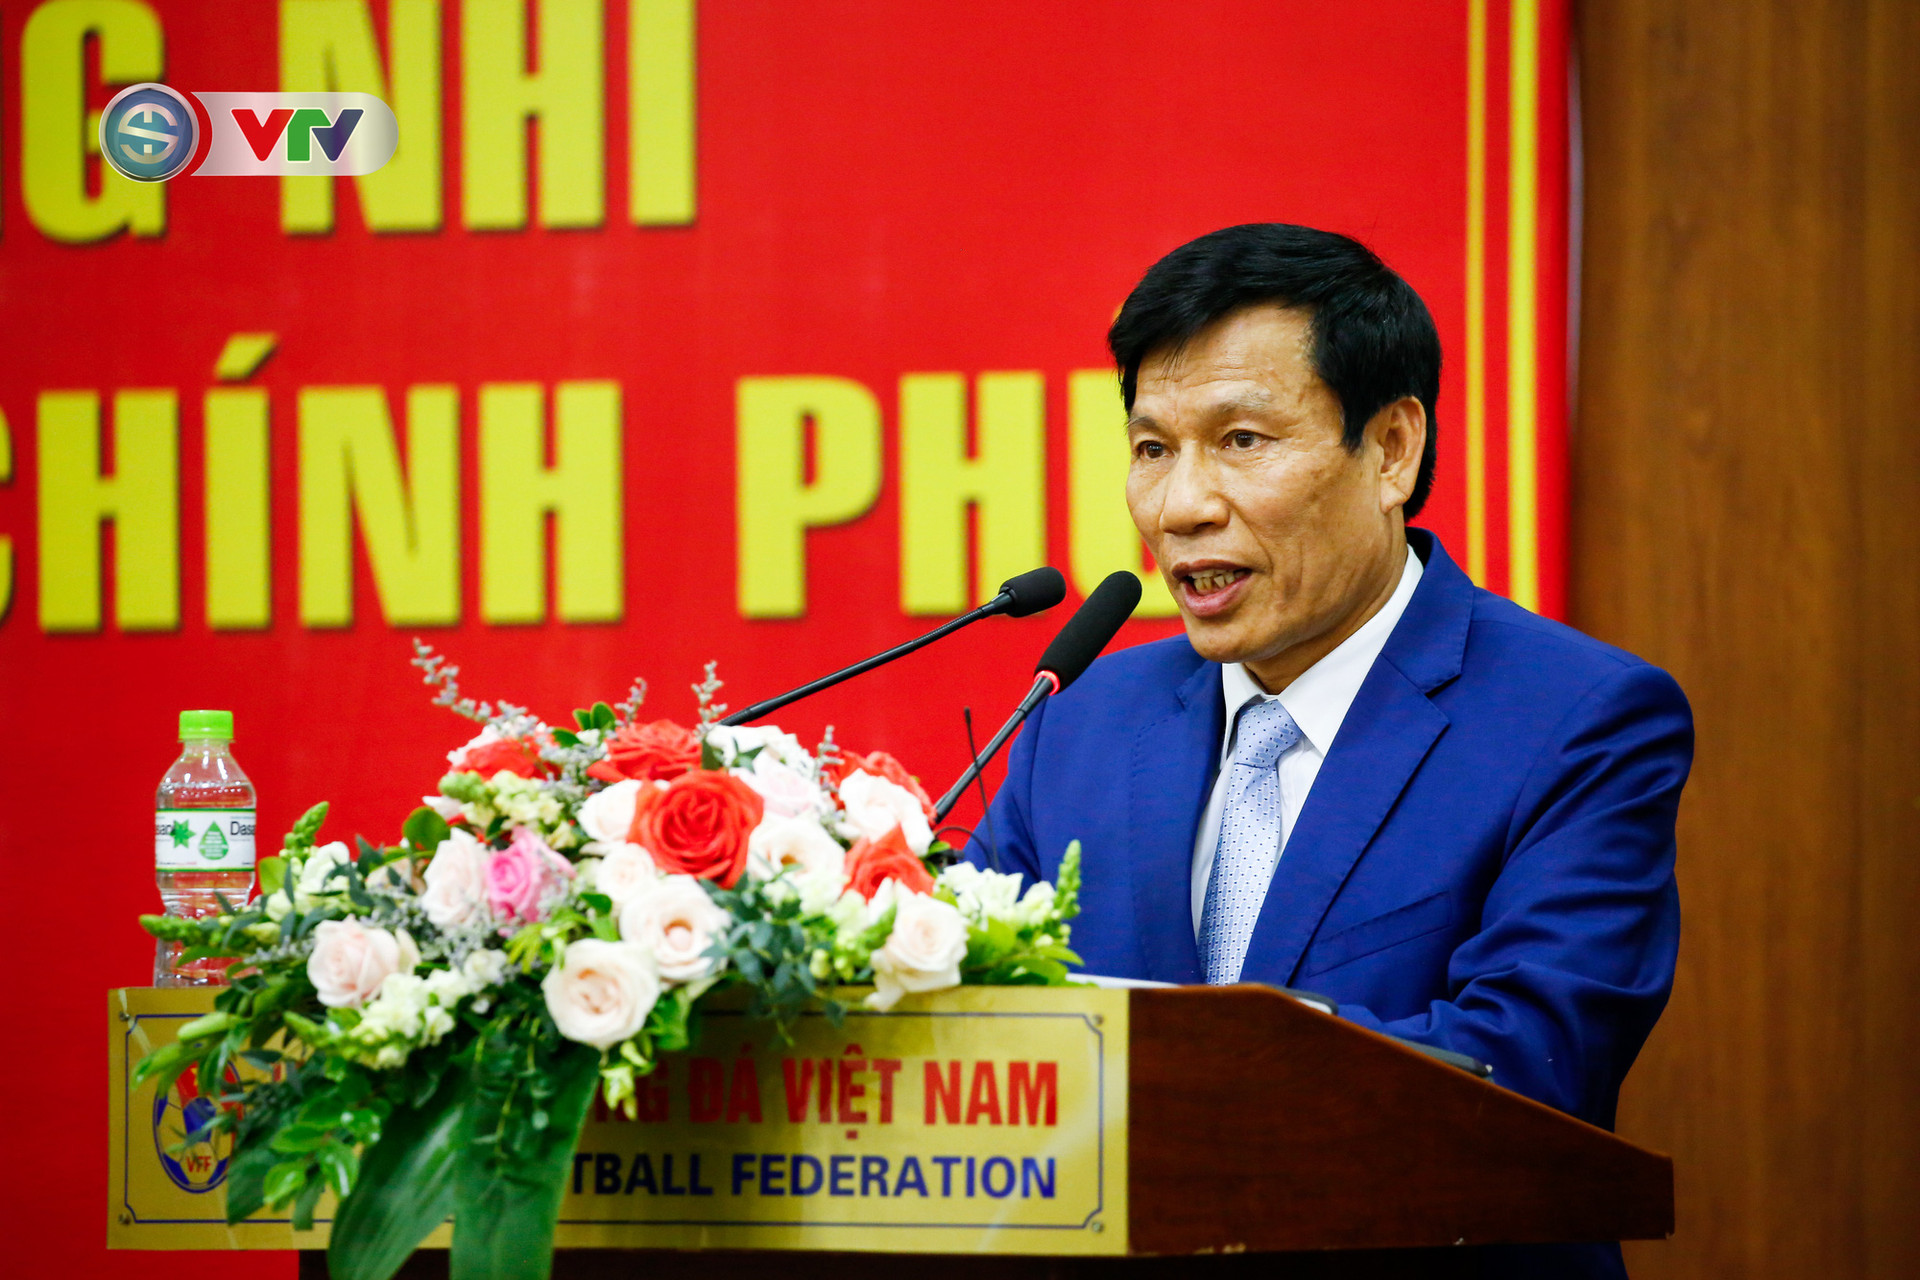 HLV Park Hang Seo nhận vinh dự chưa từng có trong lịch sử bóng đá Việt Nam - Ảnh 2.